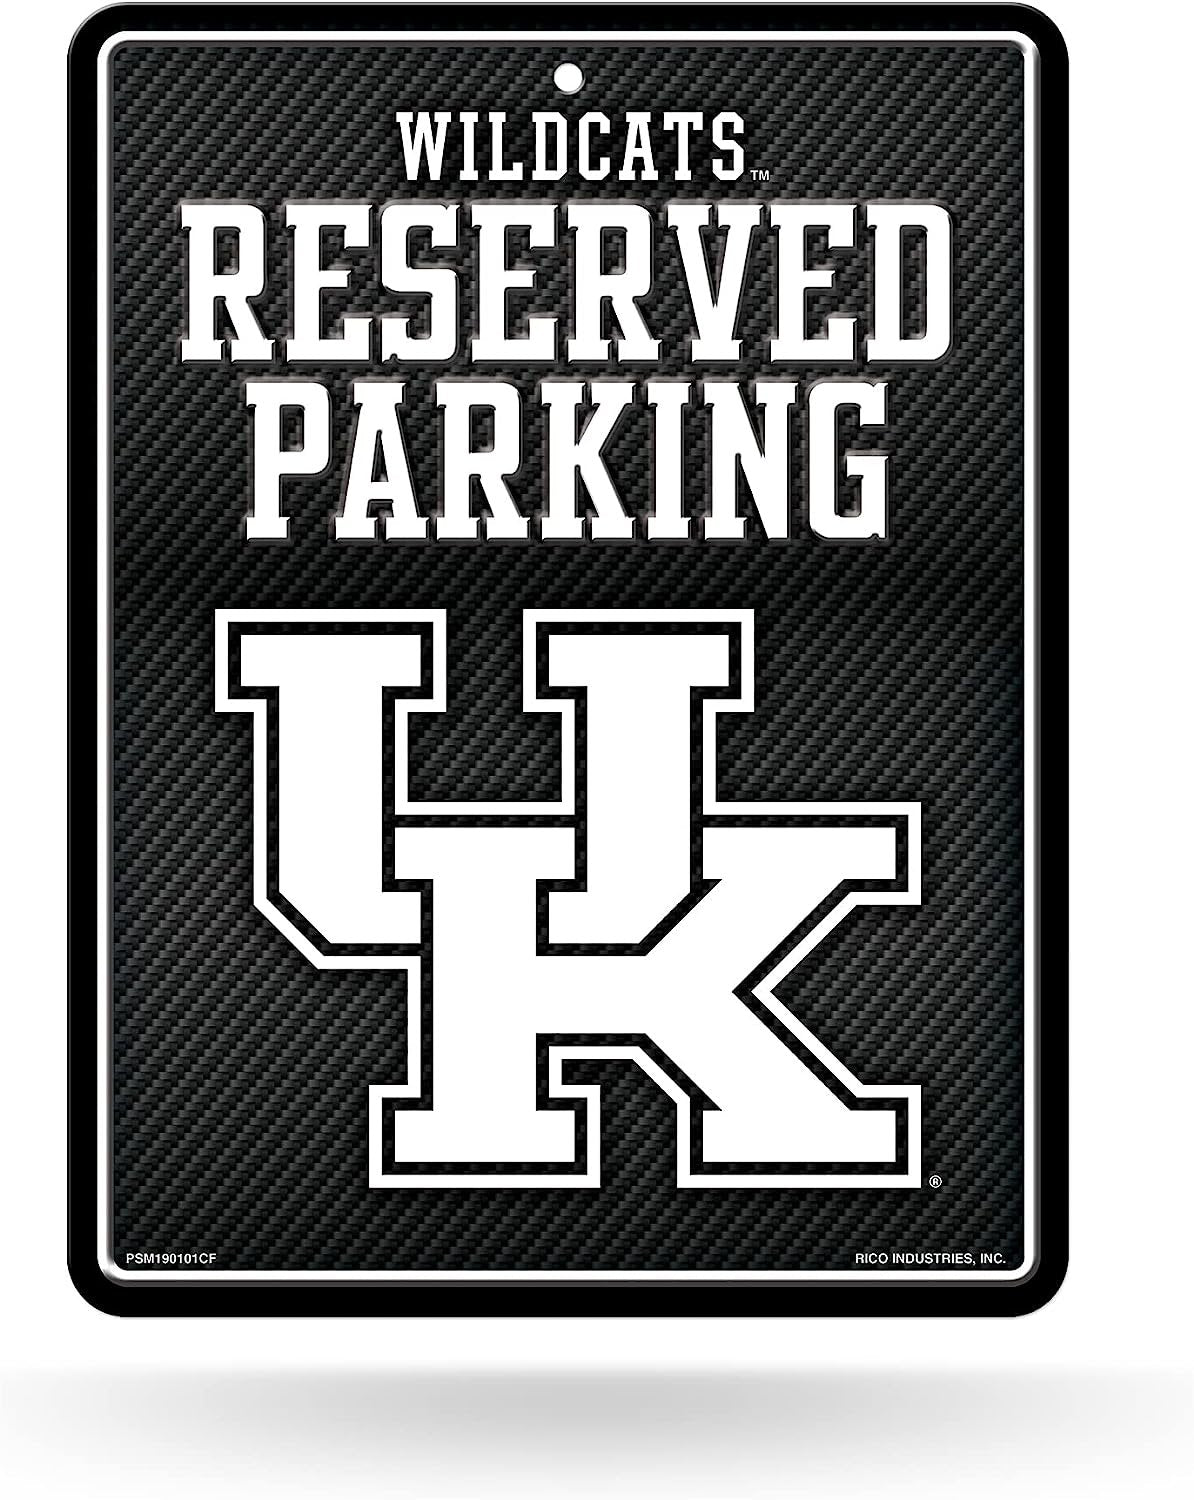 University of Kentucky Wildcats Metal Parking Novelty Wall Sign 8.5 x 11 Inch Carbon Fiber Design